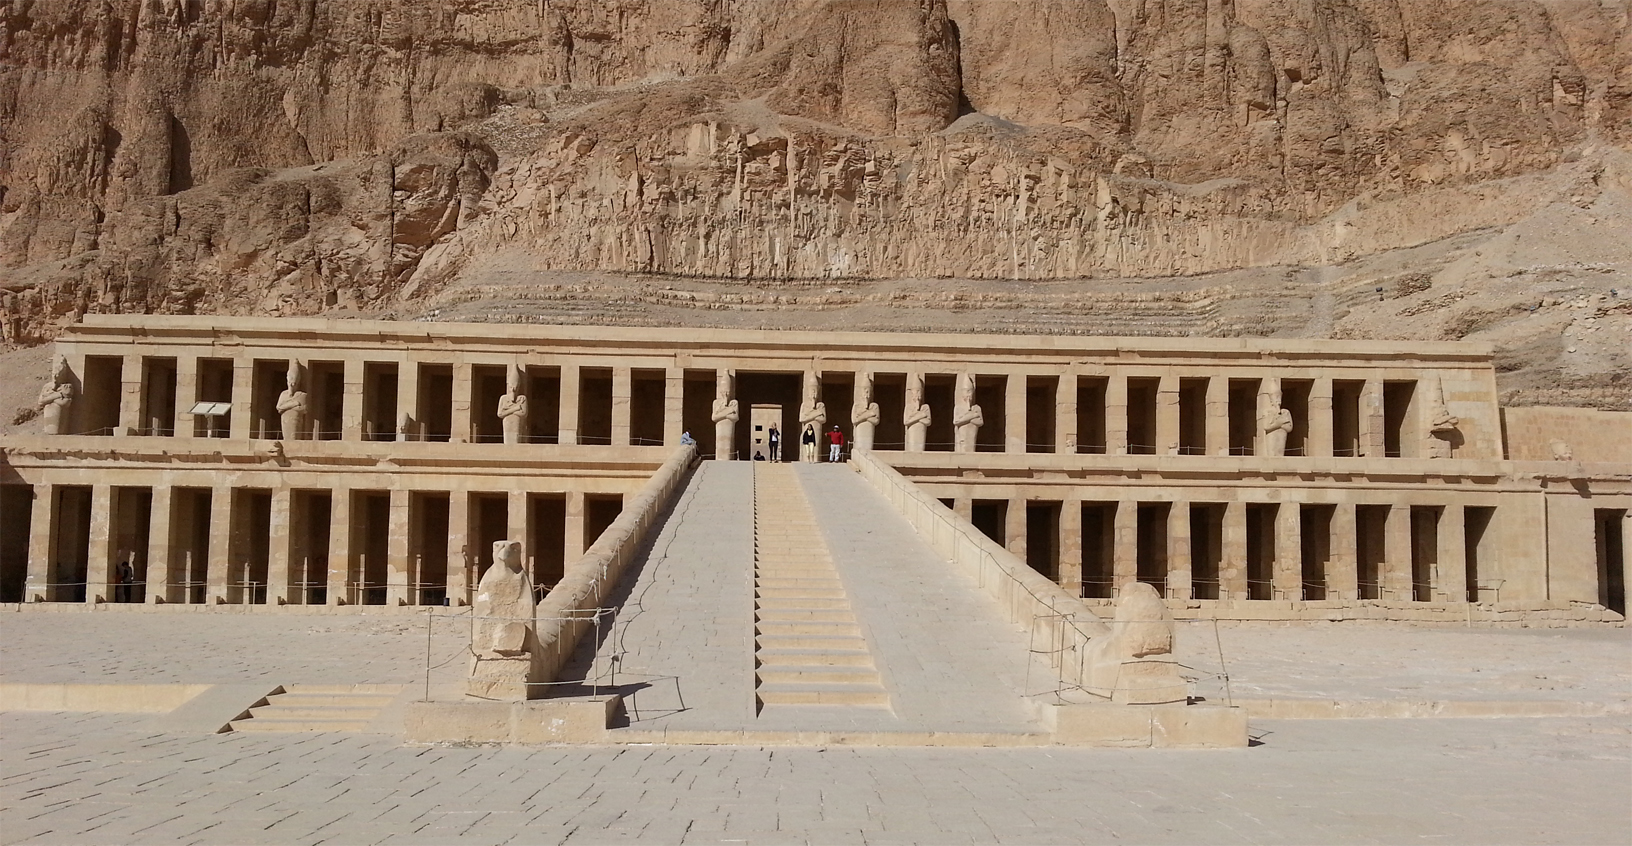 
Ai piedi del tempio di Hatshepsut, a Luxor
